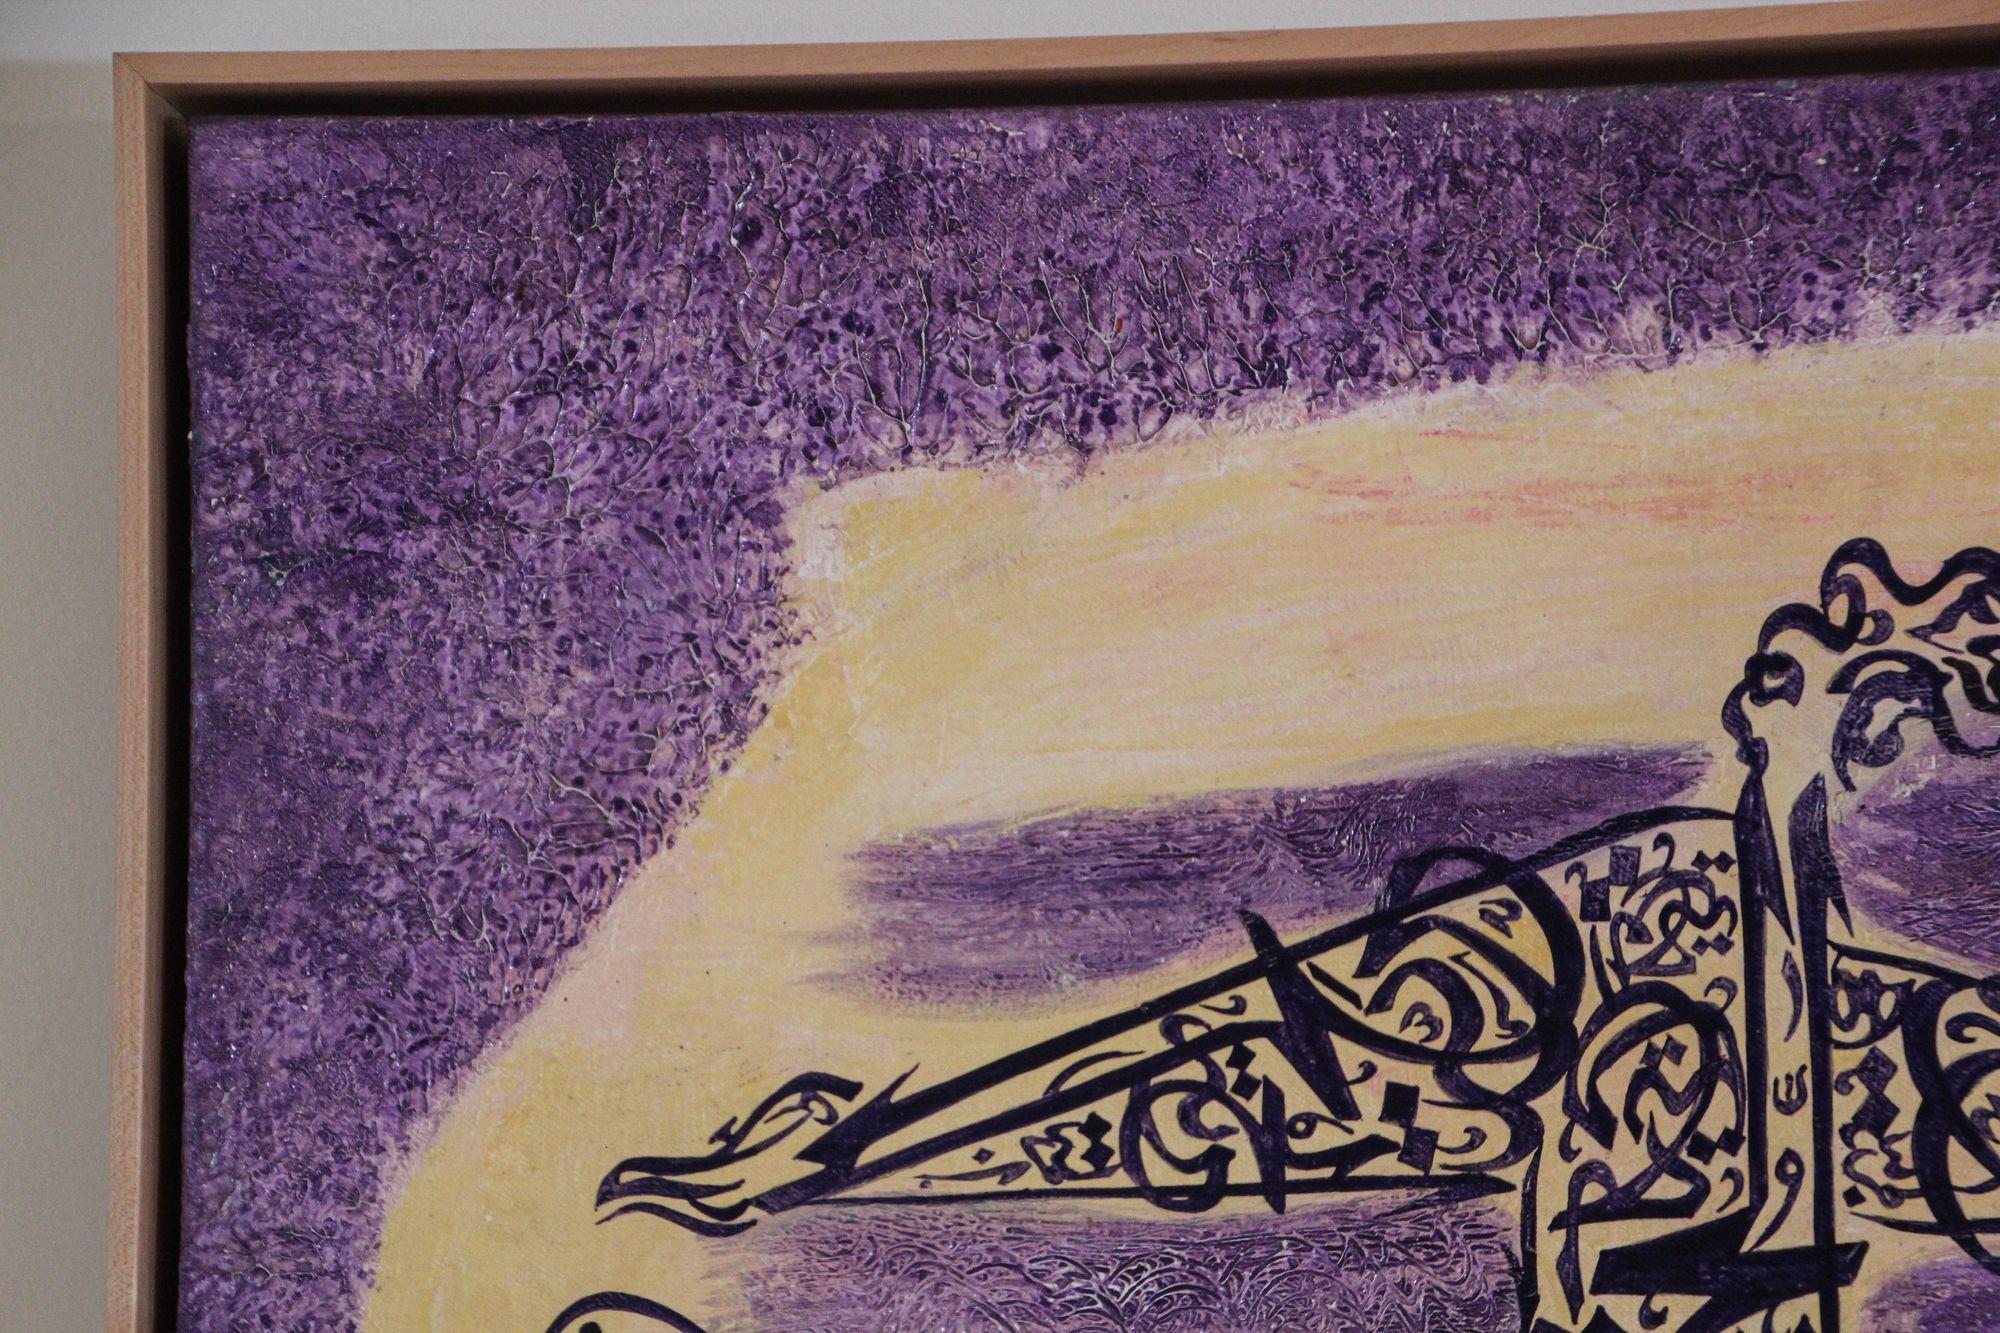 Colombe Paix et Calligraphie Arabe Violet et Jaune Huile sur Toile Peinture Encadrée.
Peint à la main d'une femme faite d'écriture dans un design de style calligraphie arabe suivant une colombe.
D'une galerie d'art à Manhattan Beach, Californie,